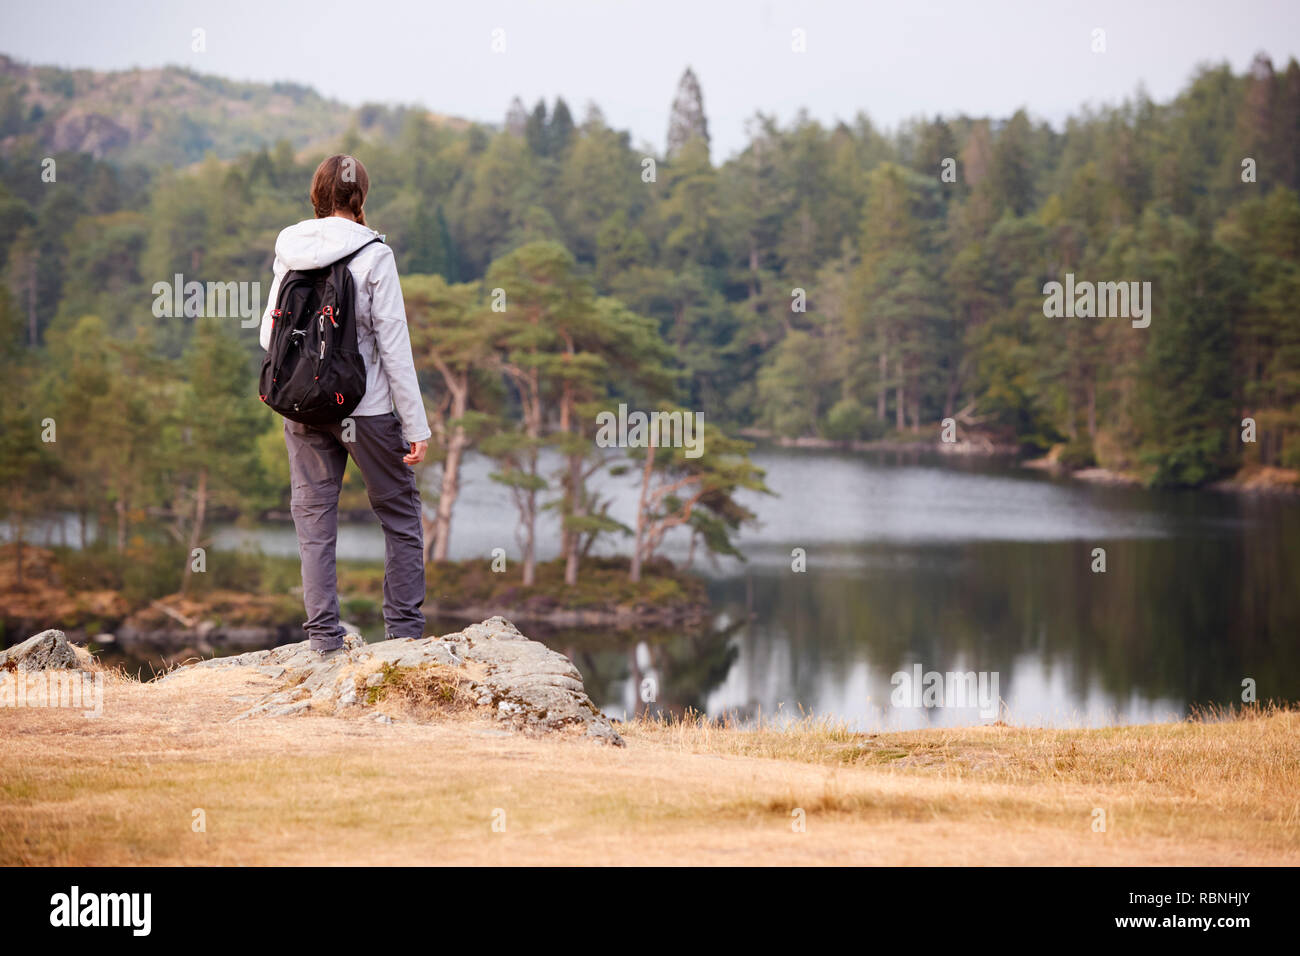 Adulto joven mujer de pie sobre una roca, admirando la vista de un lago, vista posterior, Lake District, RU Foto de stock